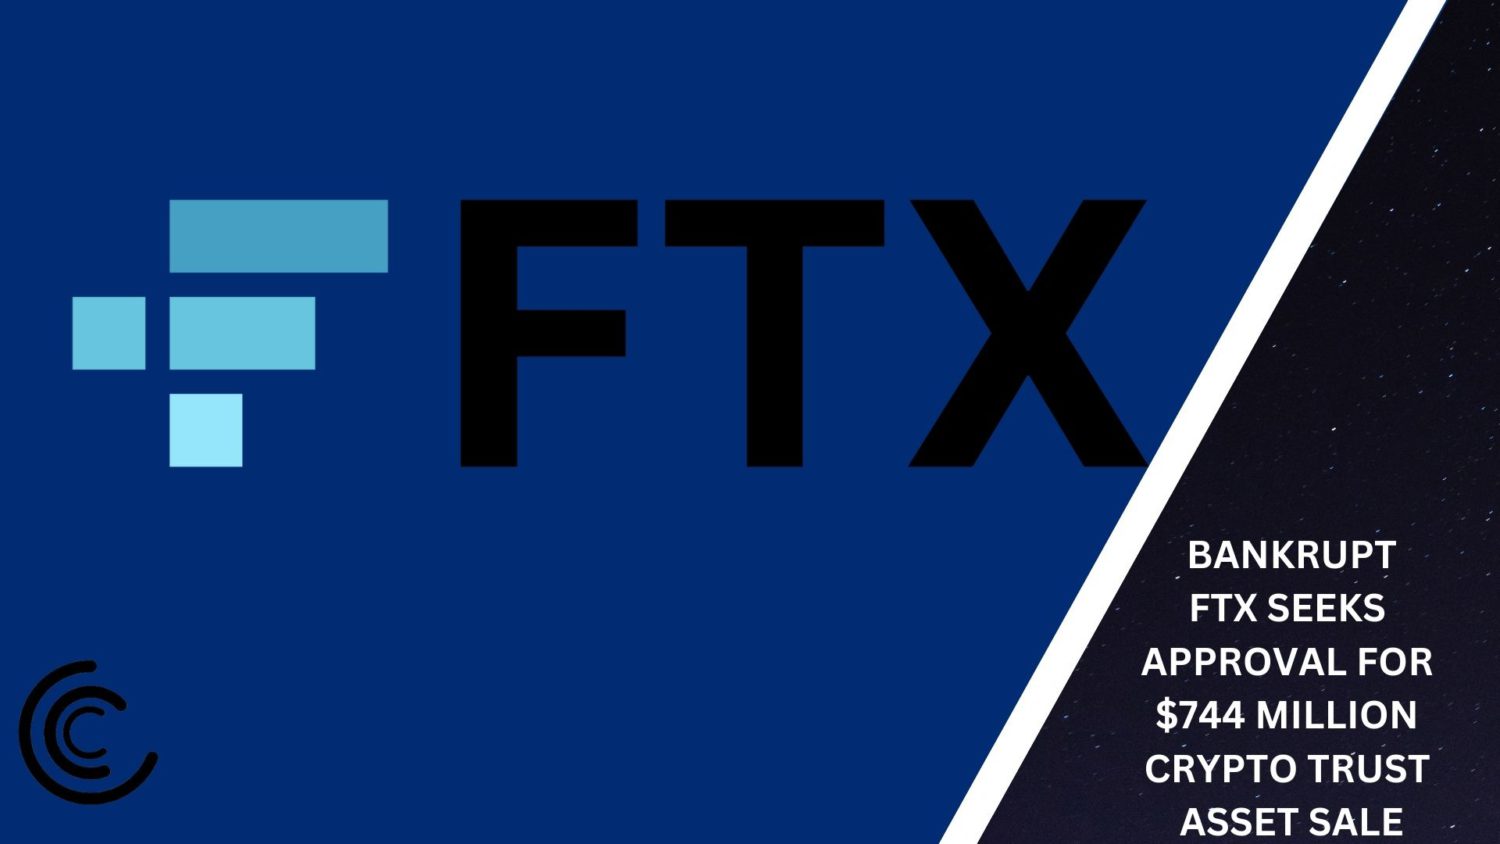 Bankrupt Ftx Seeks Approval For $744 Million Crypto Trust Asset Sale